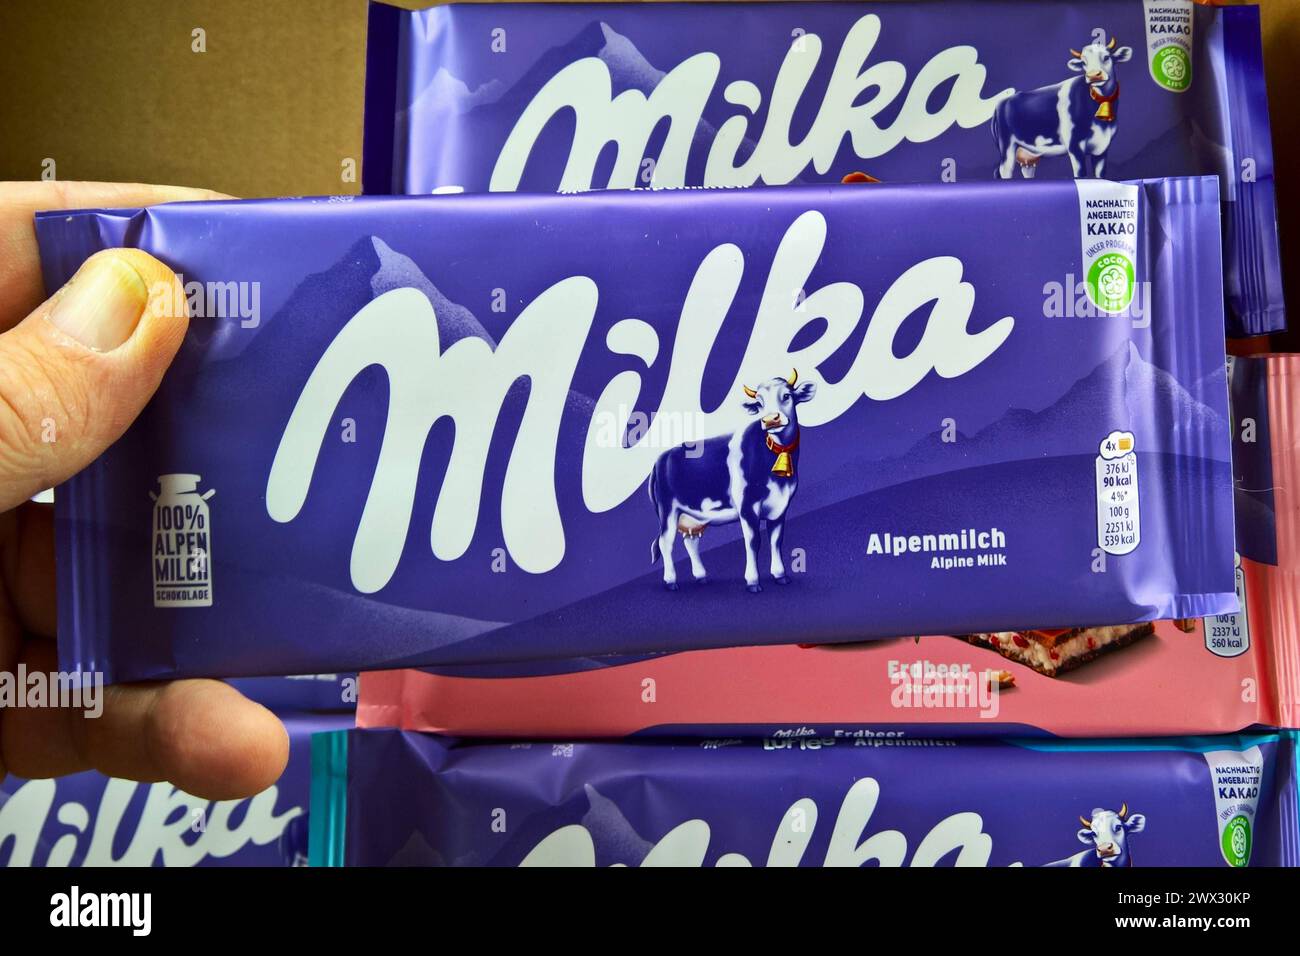 Milka Alpenmilch Schokolade vom US-amerikanischen Nahrungsmittelkonzerns Mondelez International *** Milka Alpine milk chocolate from the US food company Mondelez International Stock Photo